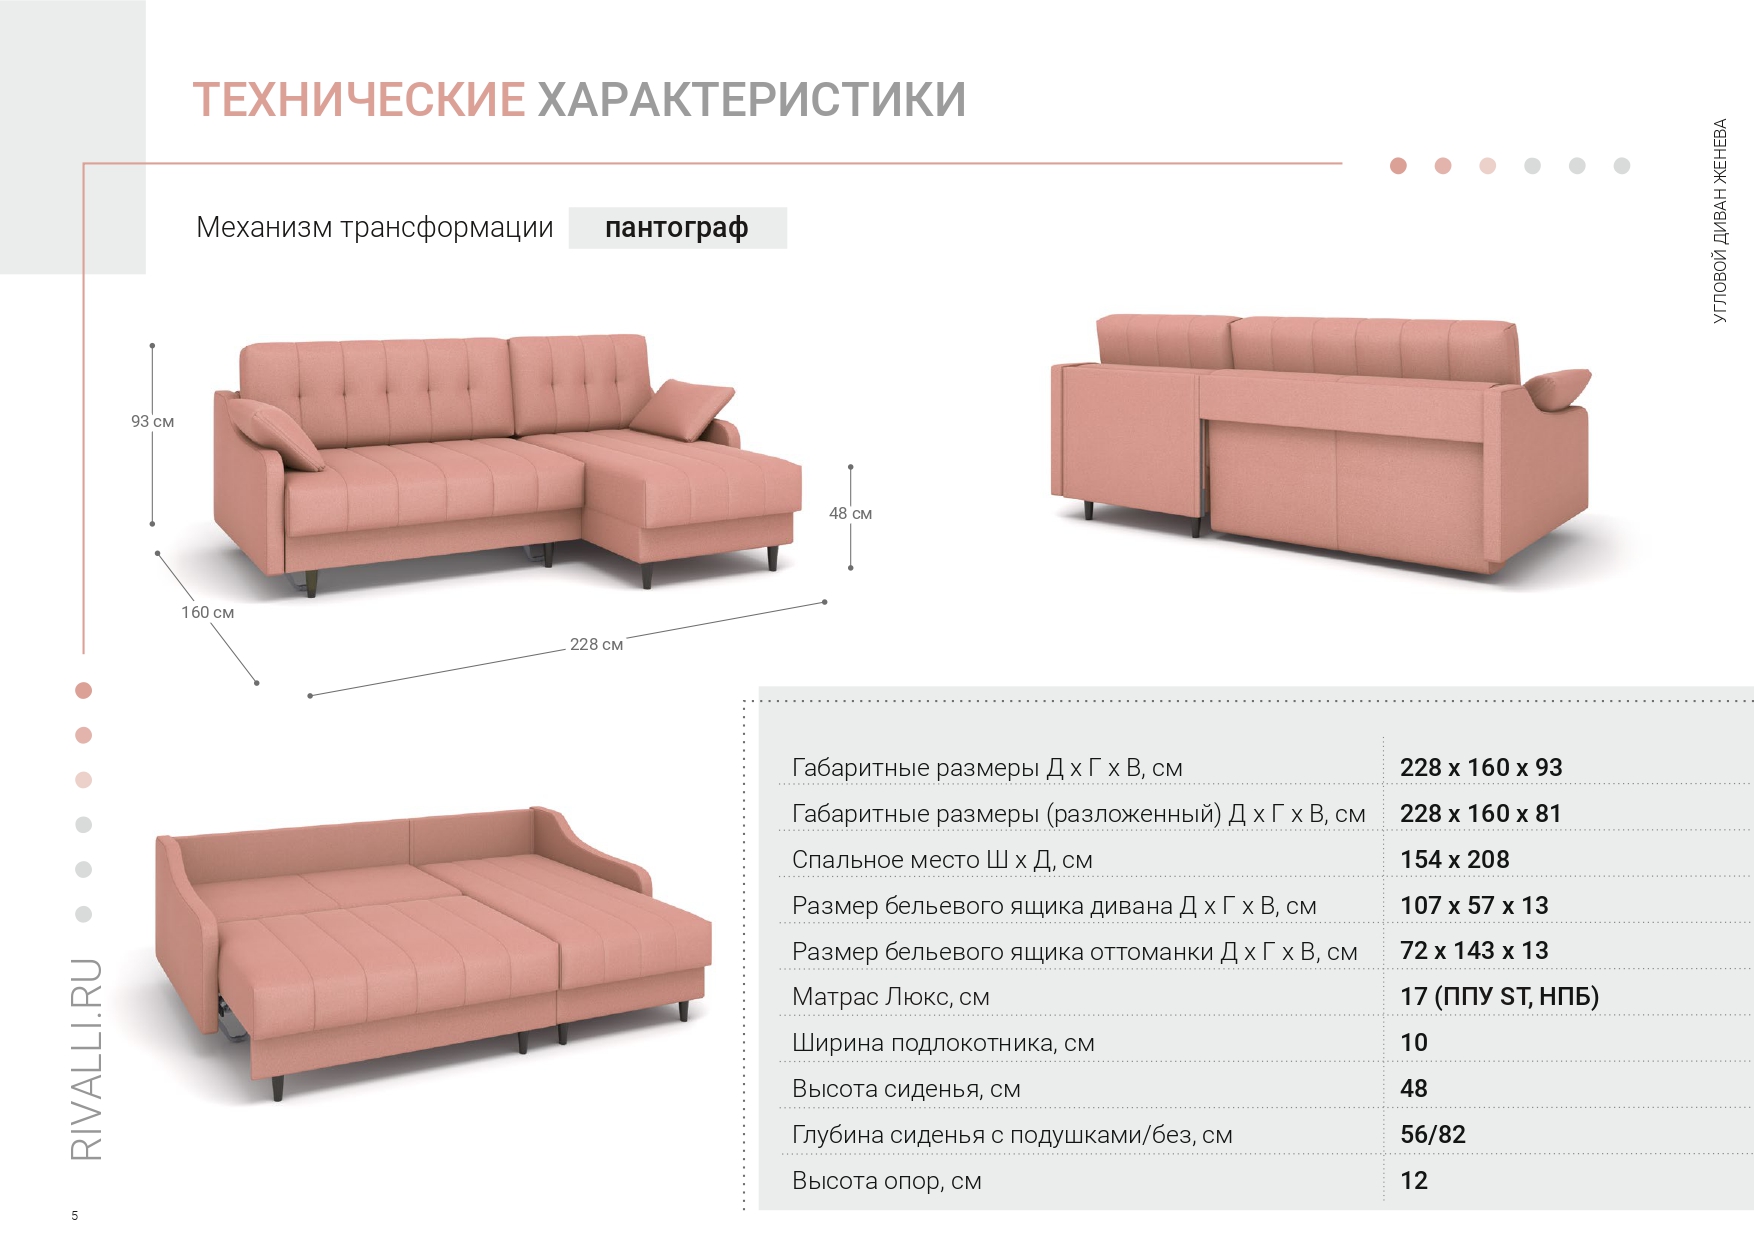 Инструкция по сборке дивана еврокнижка с подлокотниками